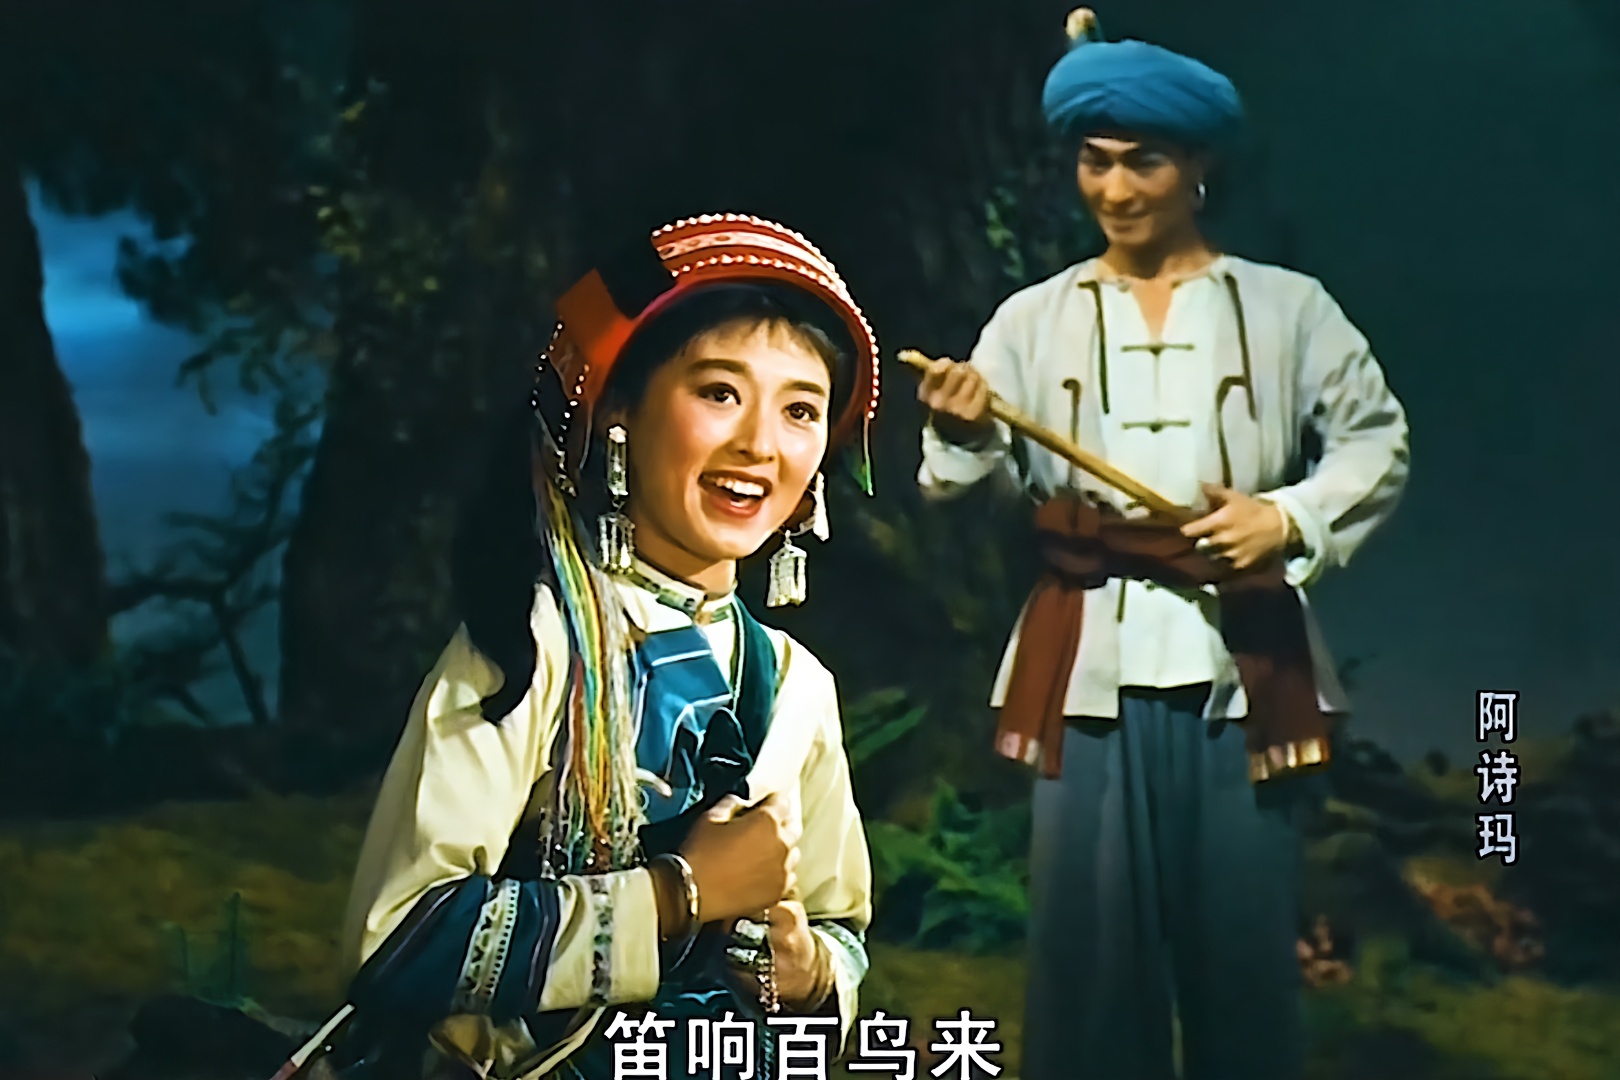 1964 电影《 阿诗玛》插曲:杜丽华,胡松华《一朵鲜花鲜又鲜》